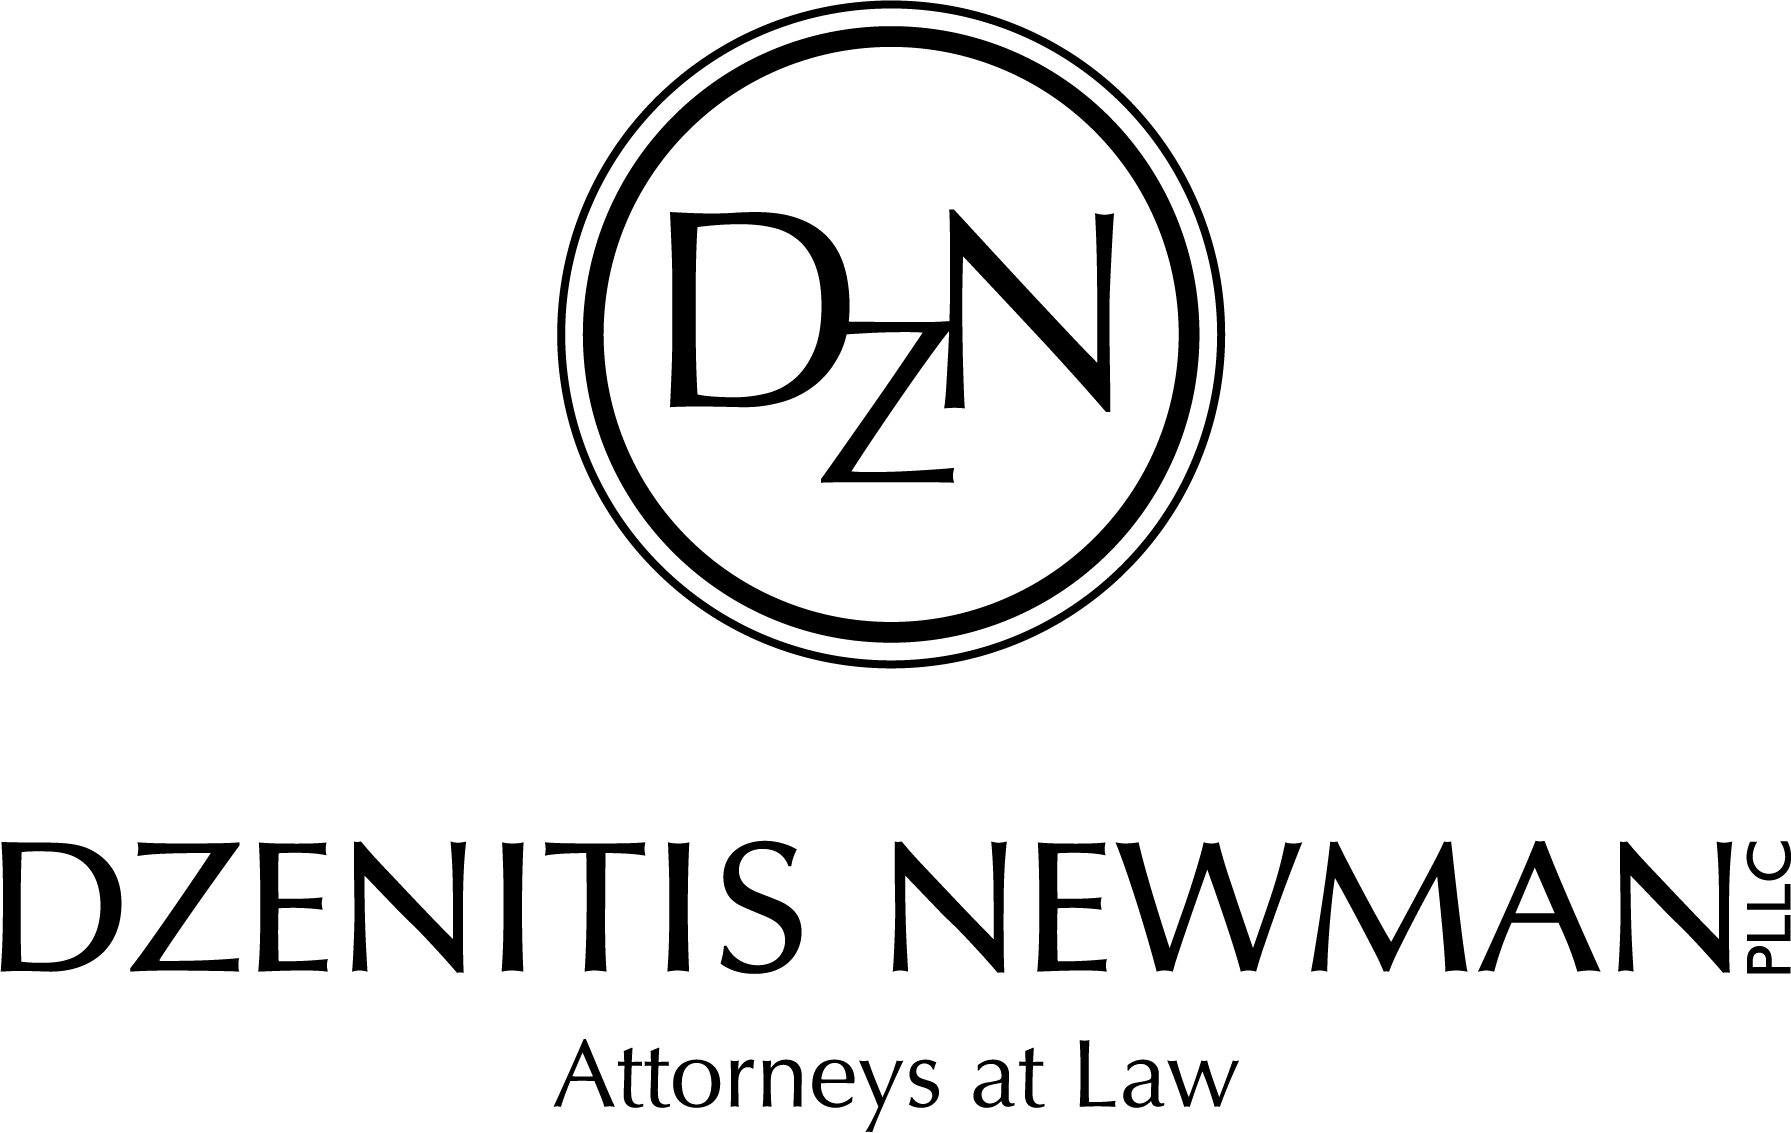 DZN Dzenitis Newman PLLC Attorneys at Law